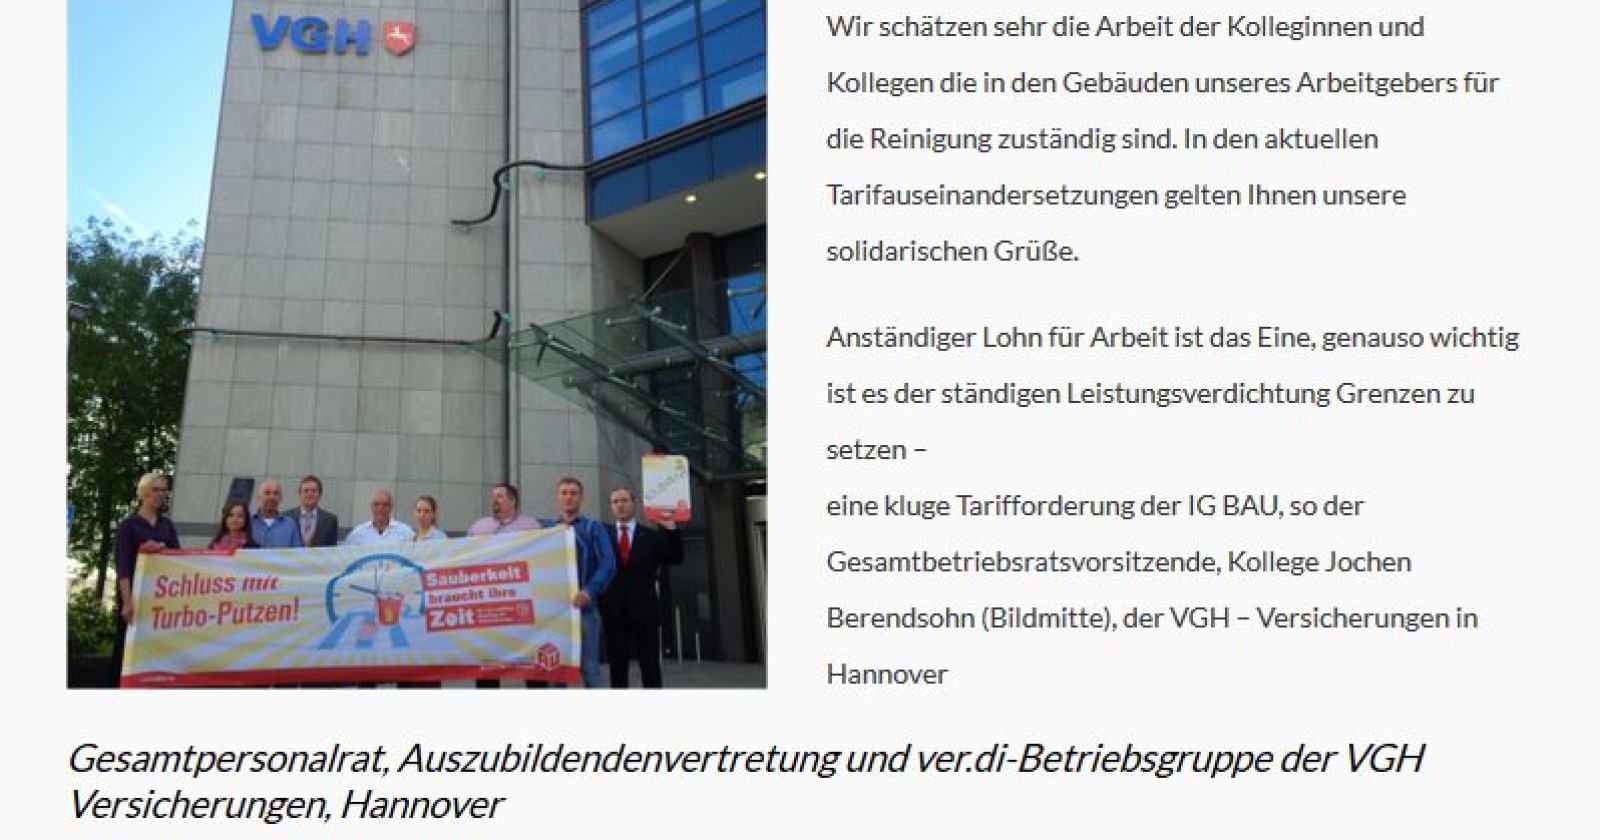 Kolleginnen & Kollegen der VGH Versicherungen in Hannover erklären sich solidarisch